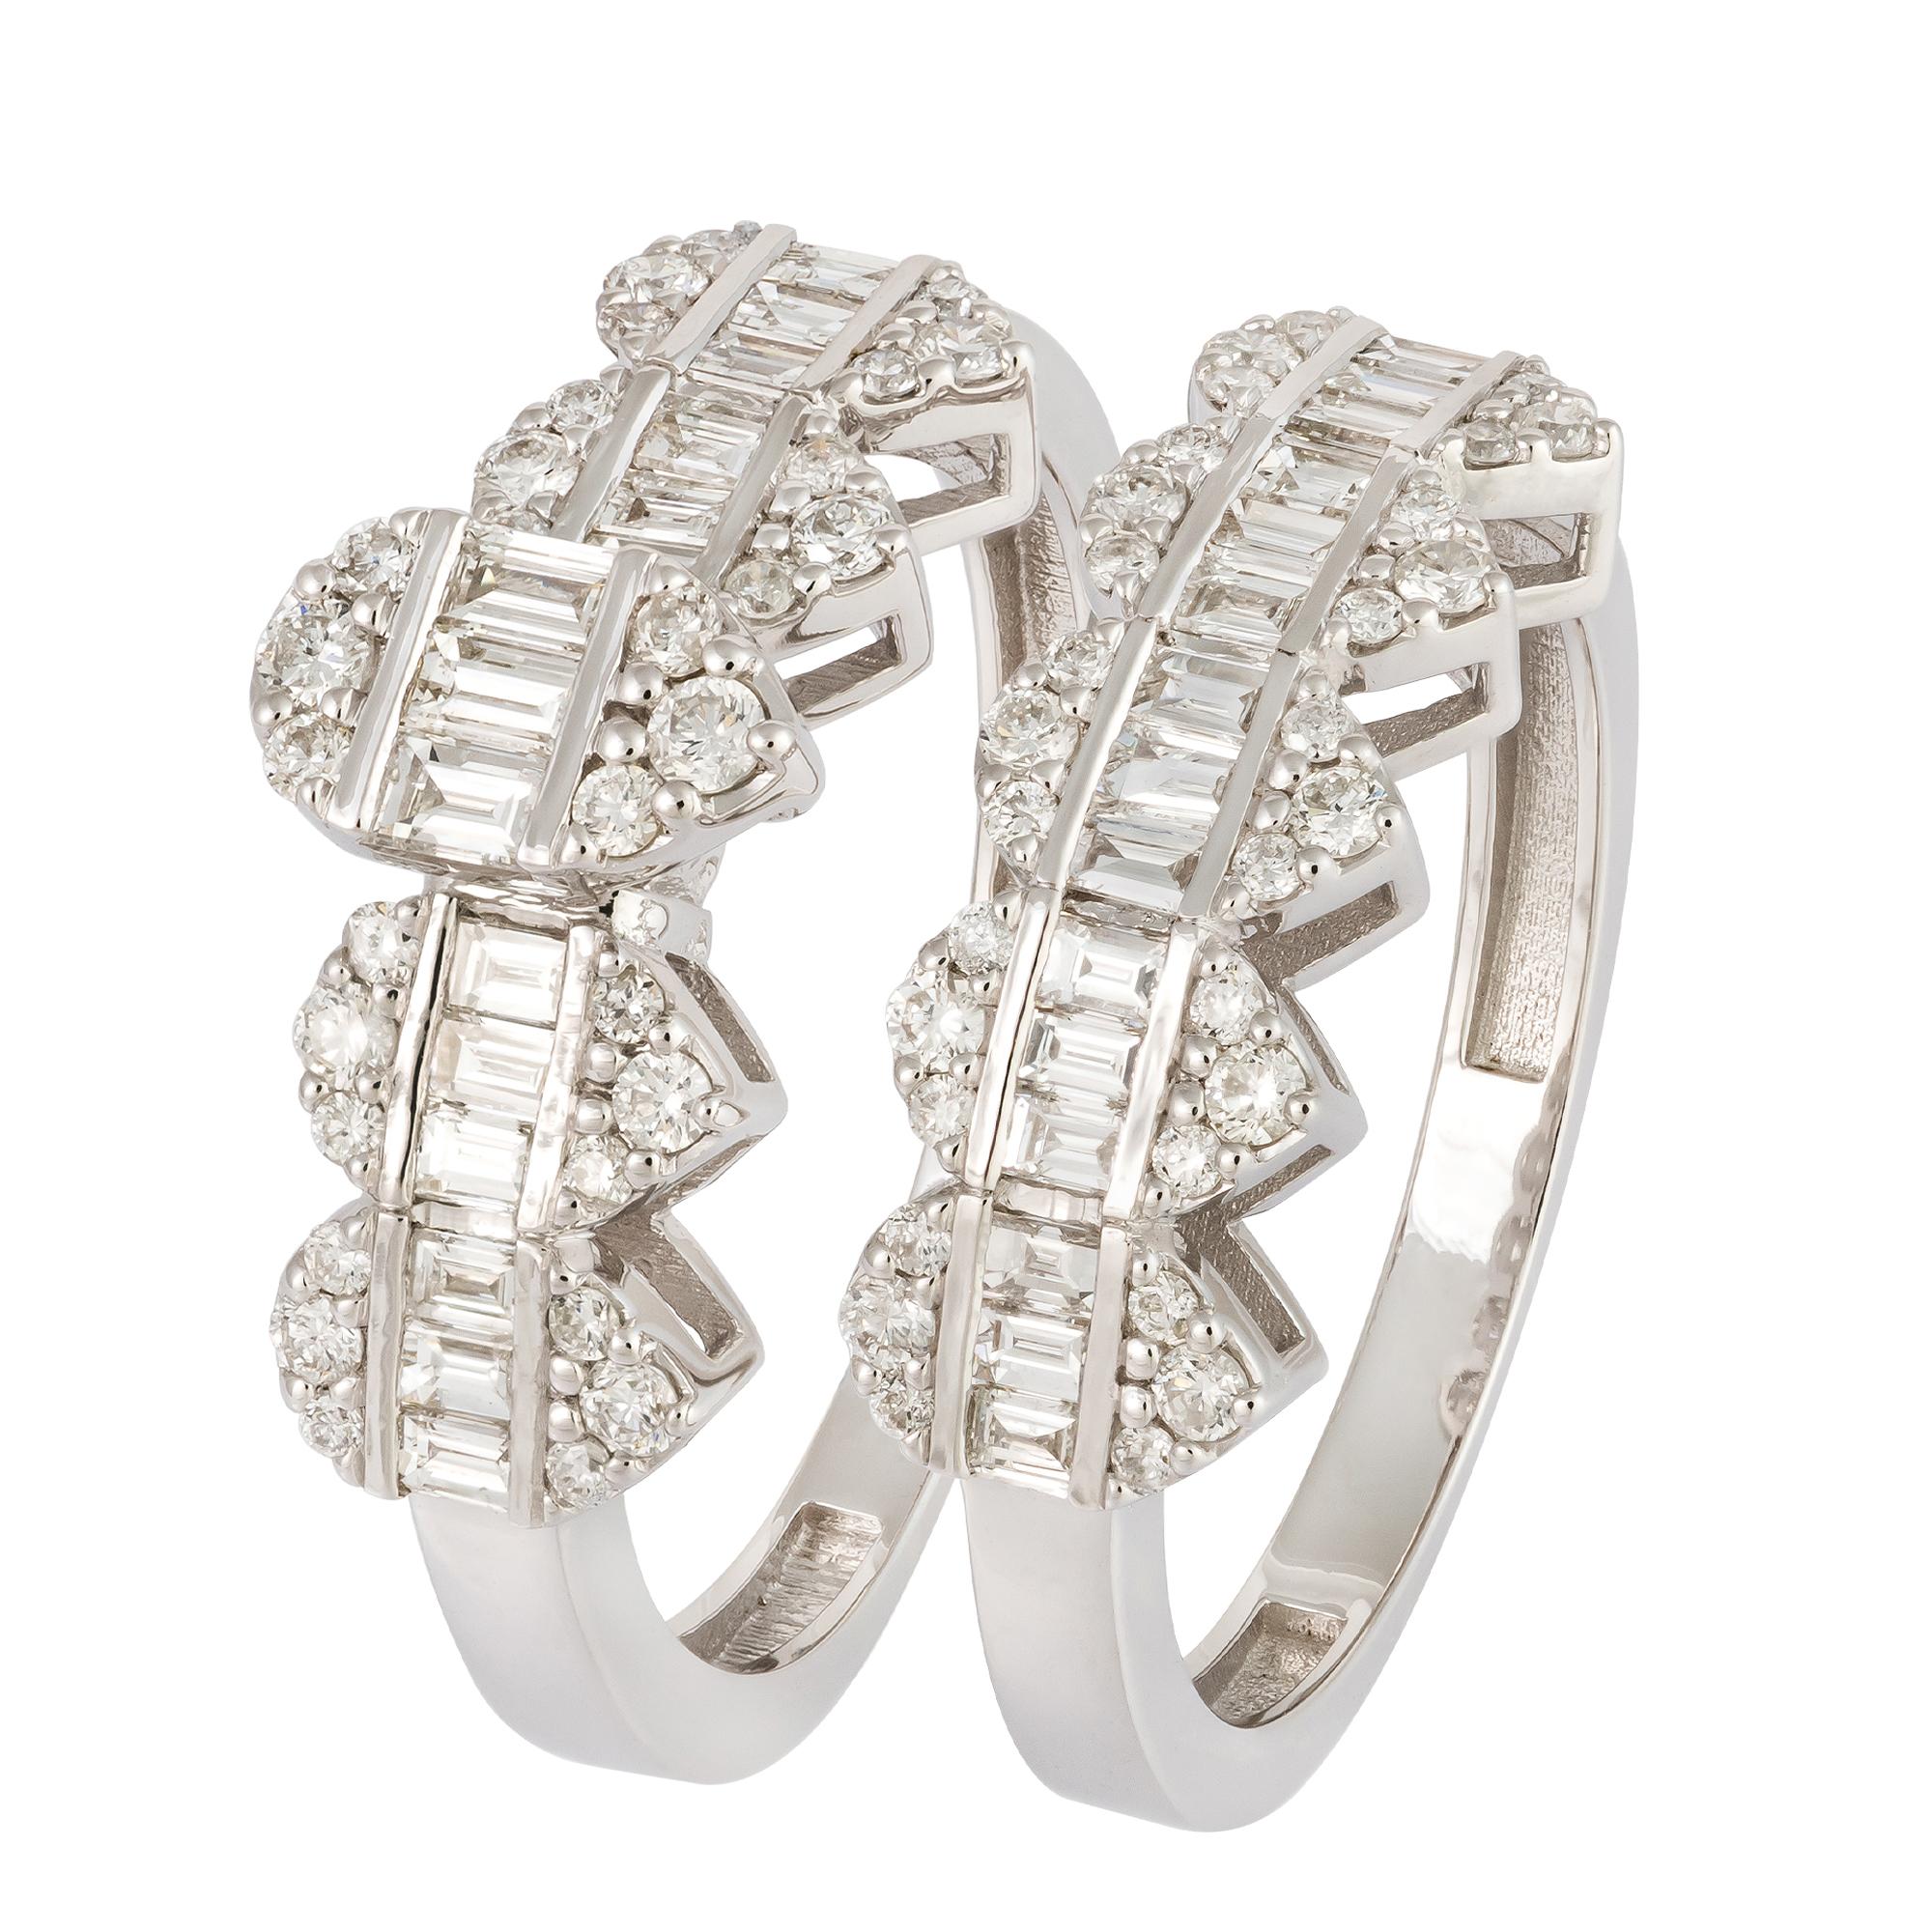 For Sale:  Stunning White 18K Gold White Diamond Ring For Her 3